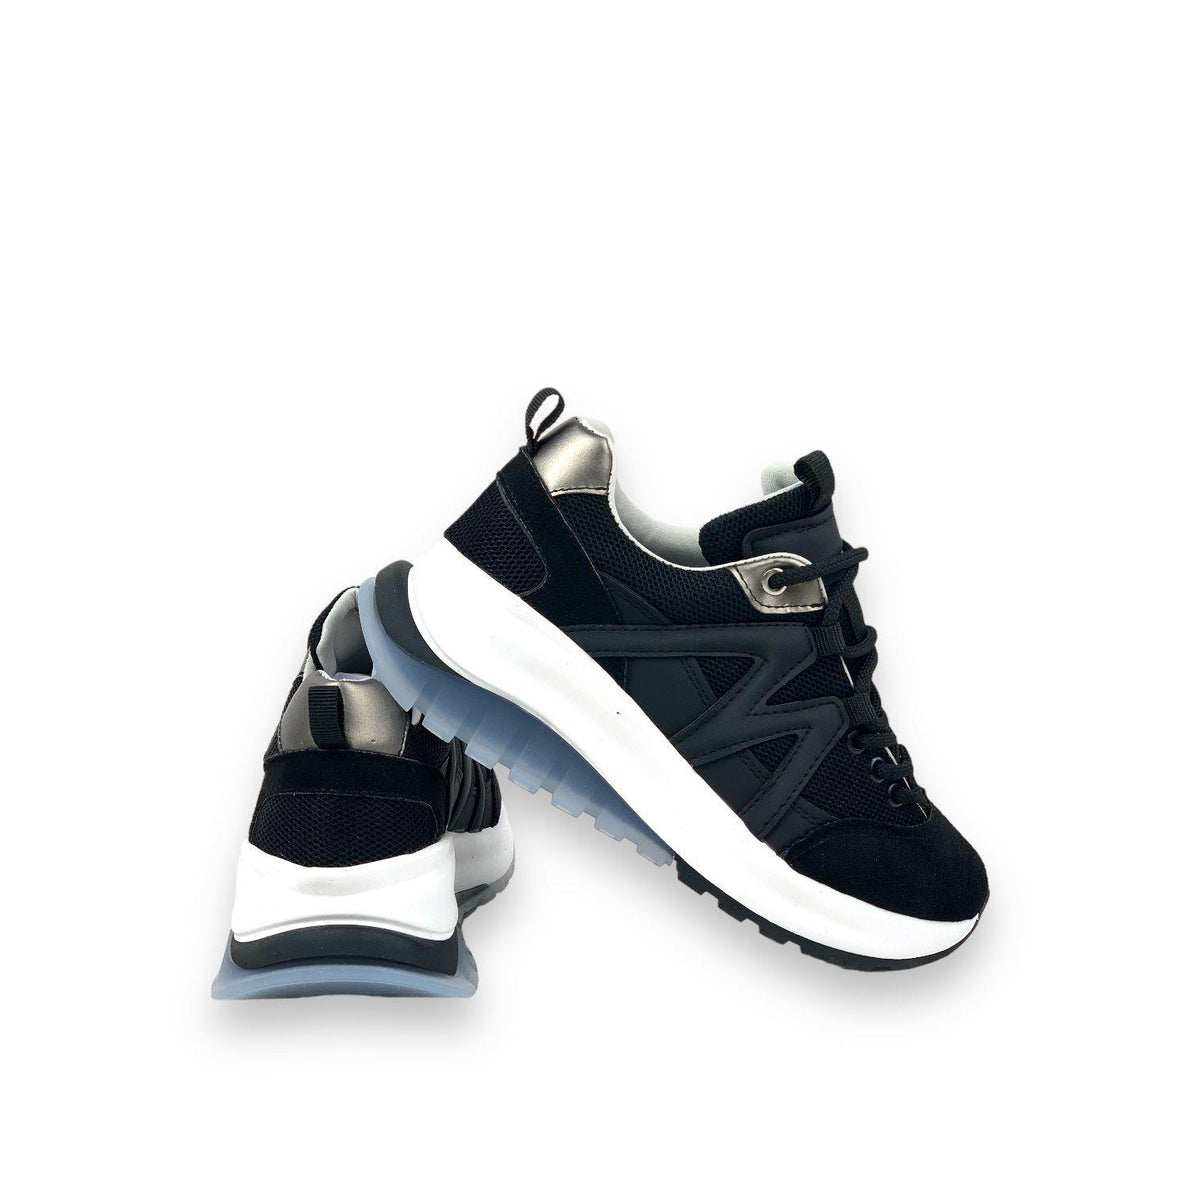 Women's Mafy Black Comfort Sole Daily Walking Sneaker 4 Cm - STREETMODE ™